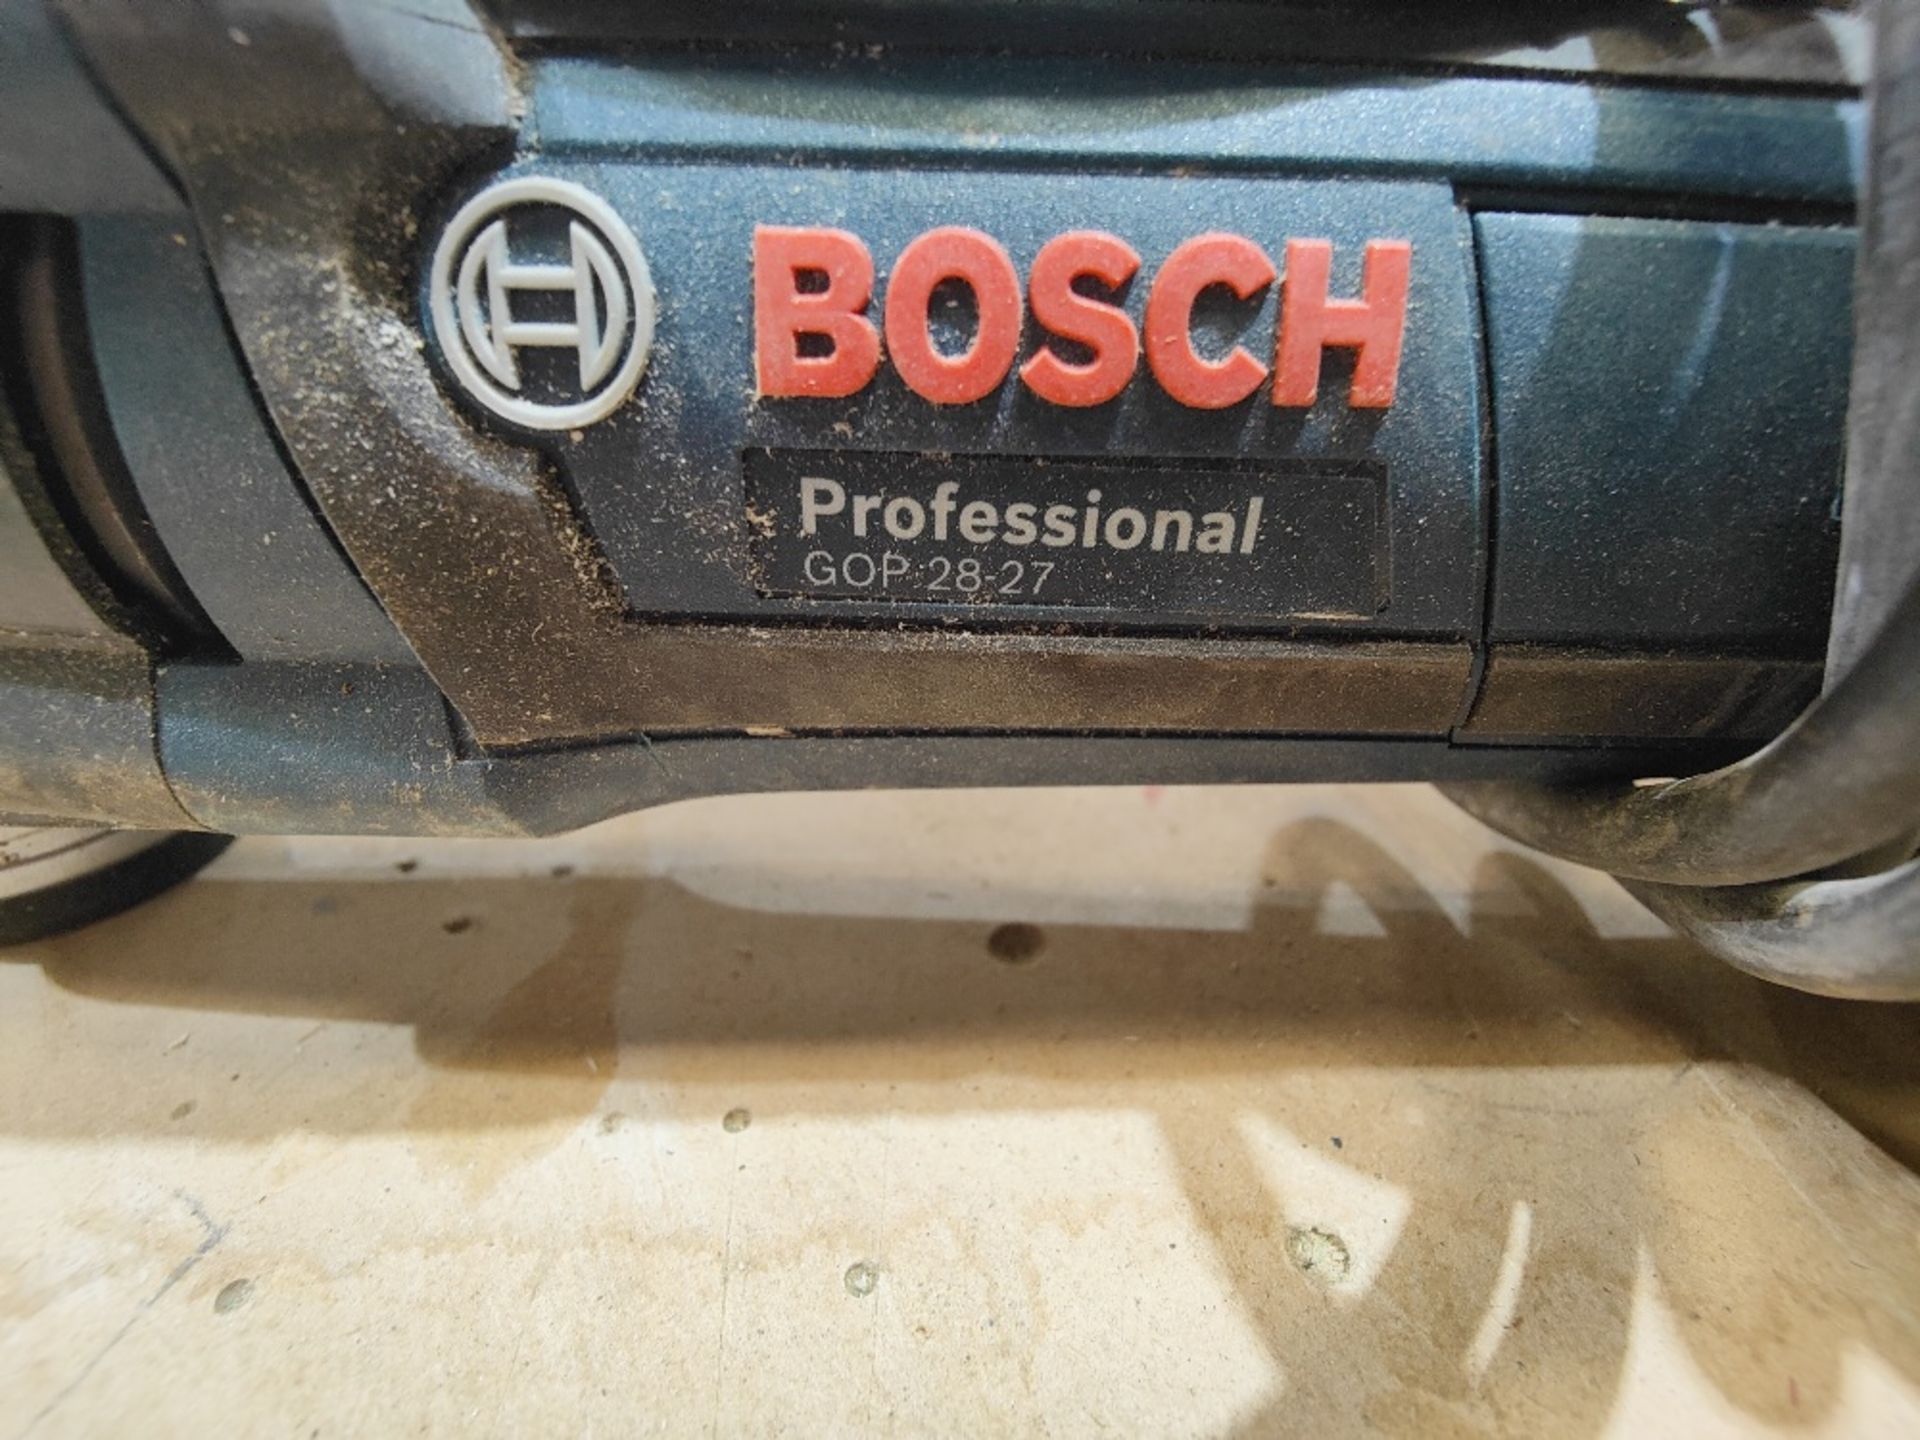 Bosch Professional GOP 28-27 110V multicutter - Image 3 of 3